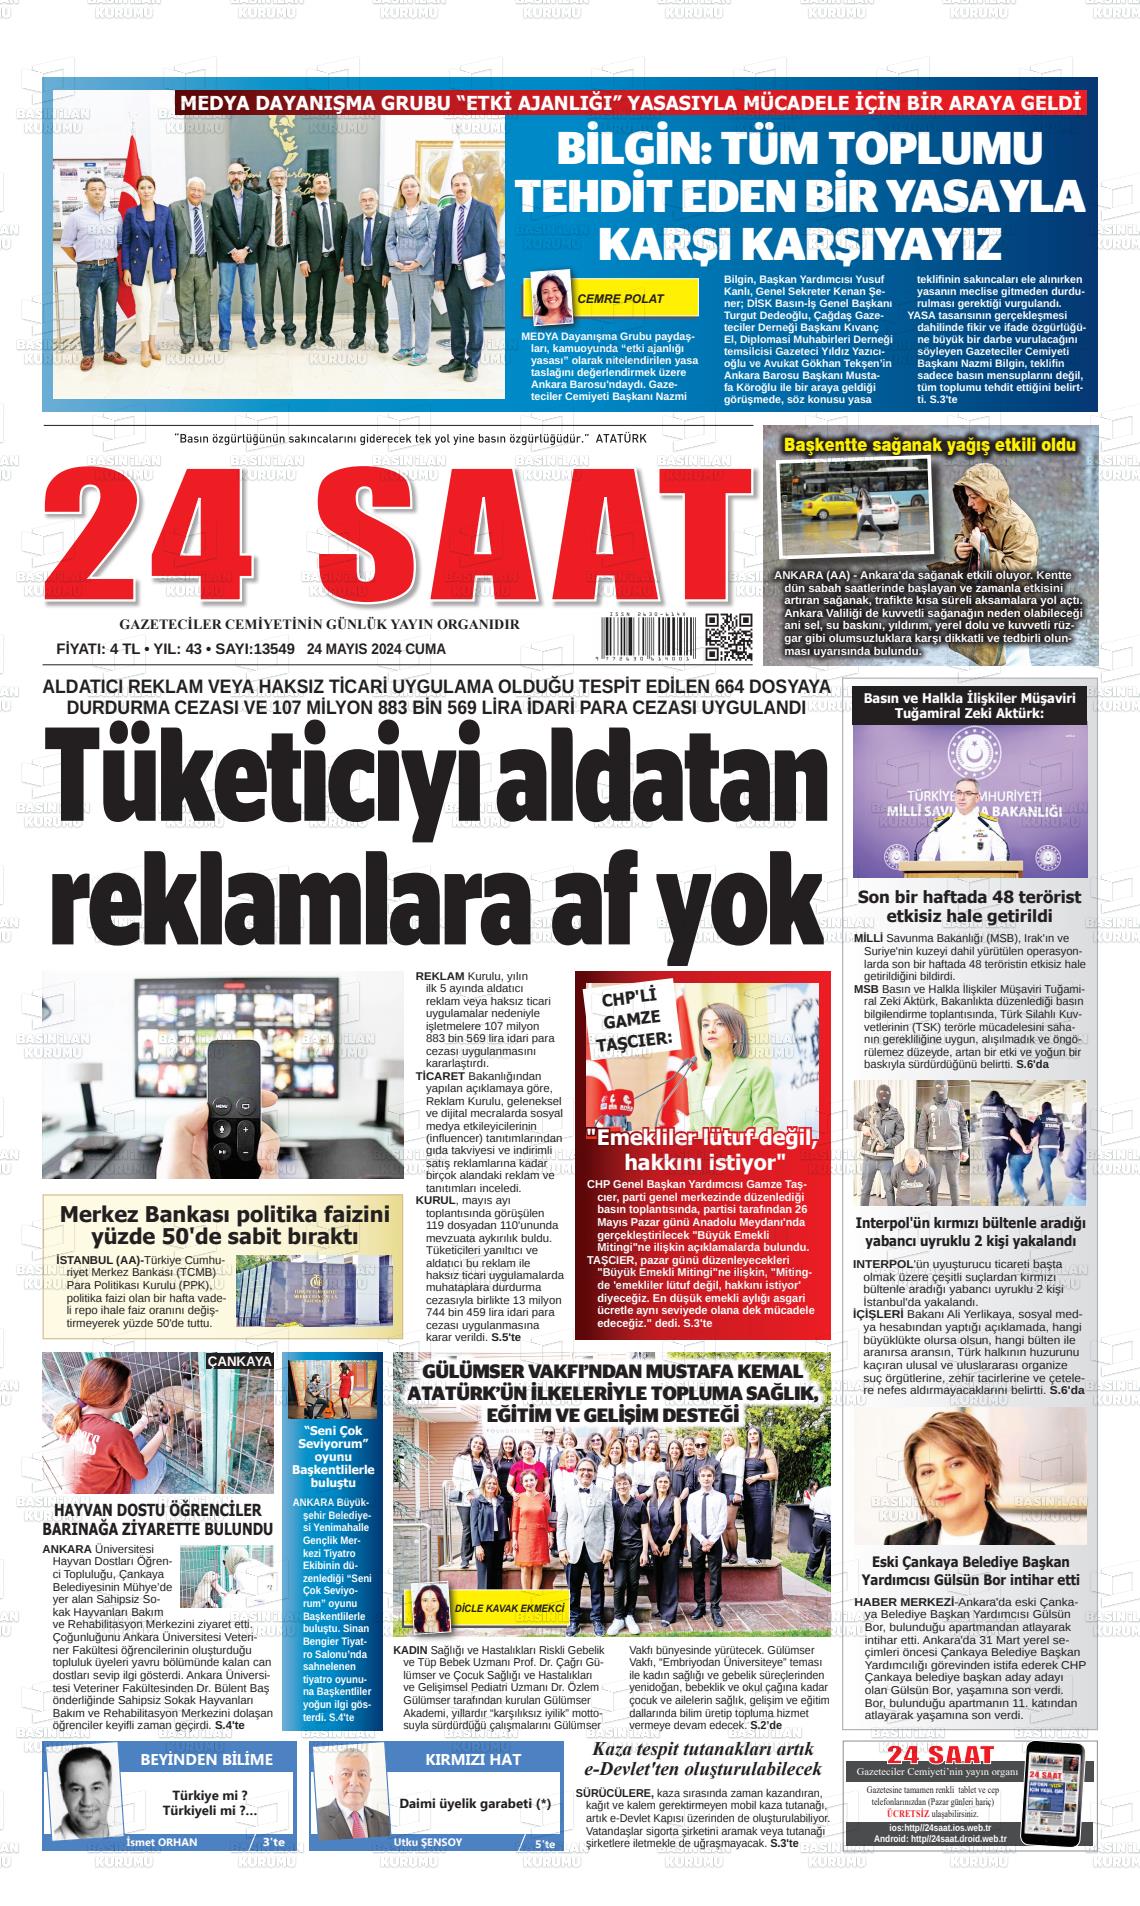 24 SAAT Gazetesi